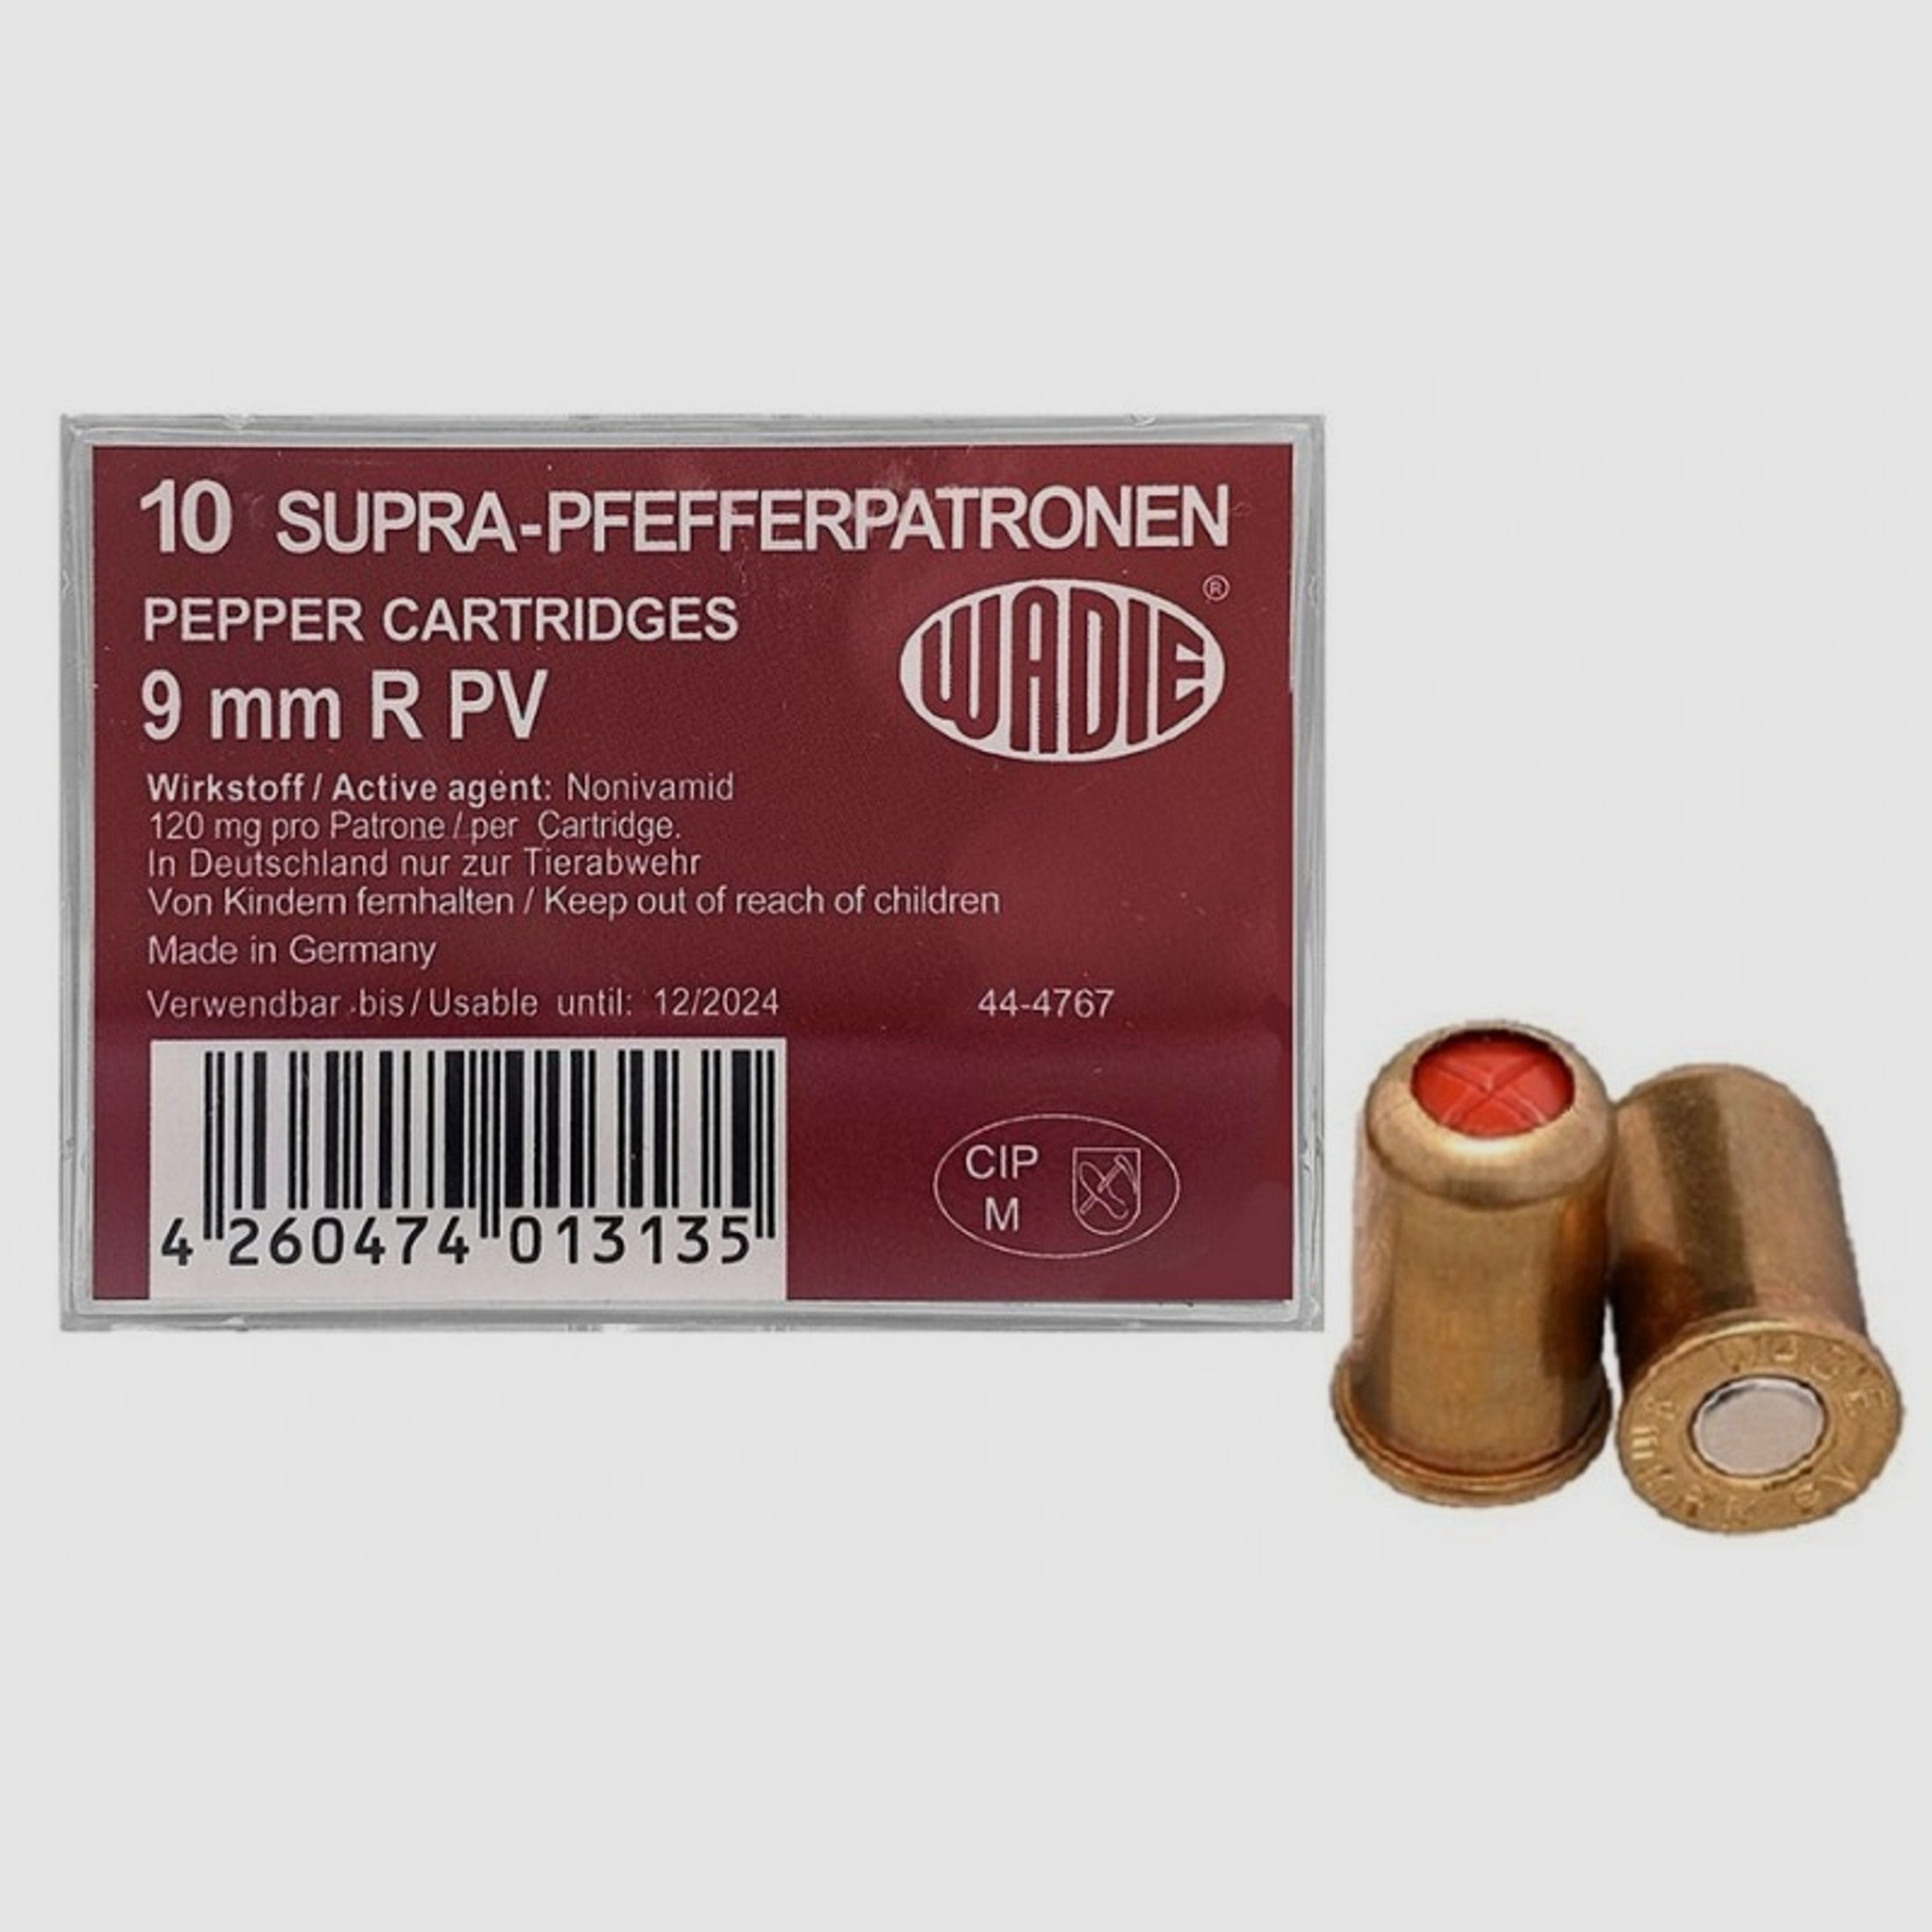 Wadie Pfefferpatronen Supra im Kaliber 9mm R PV für alle Schreckschuss - Revolver, 10 Stk